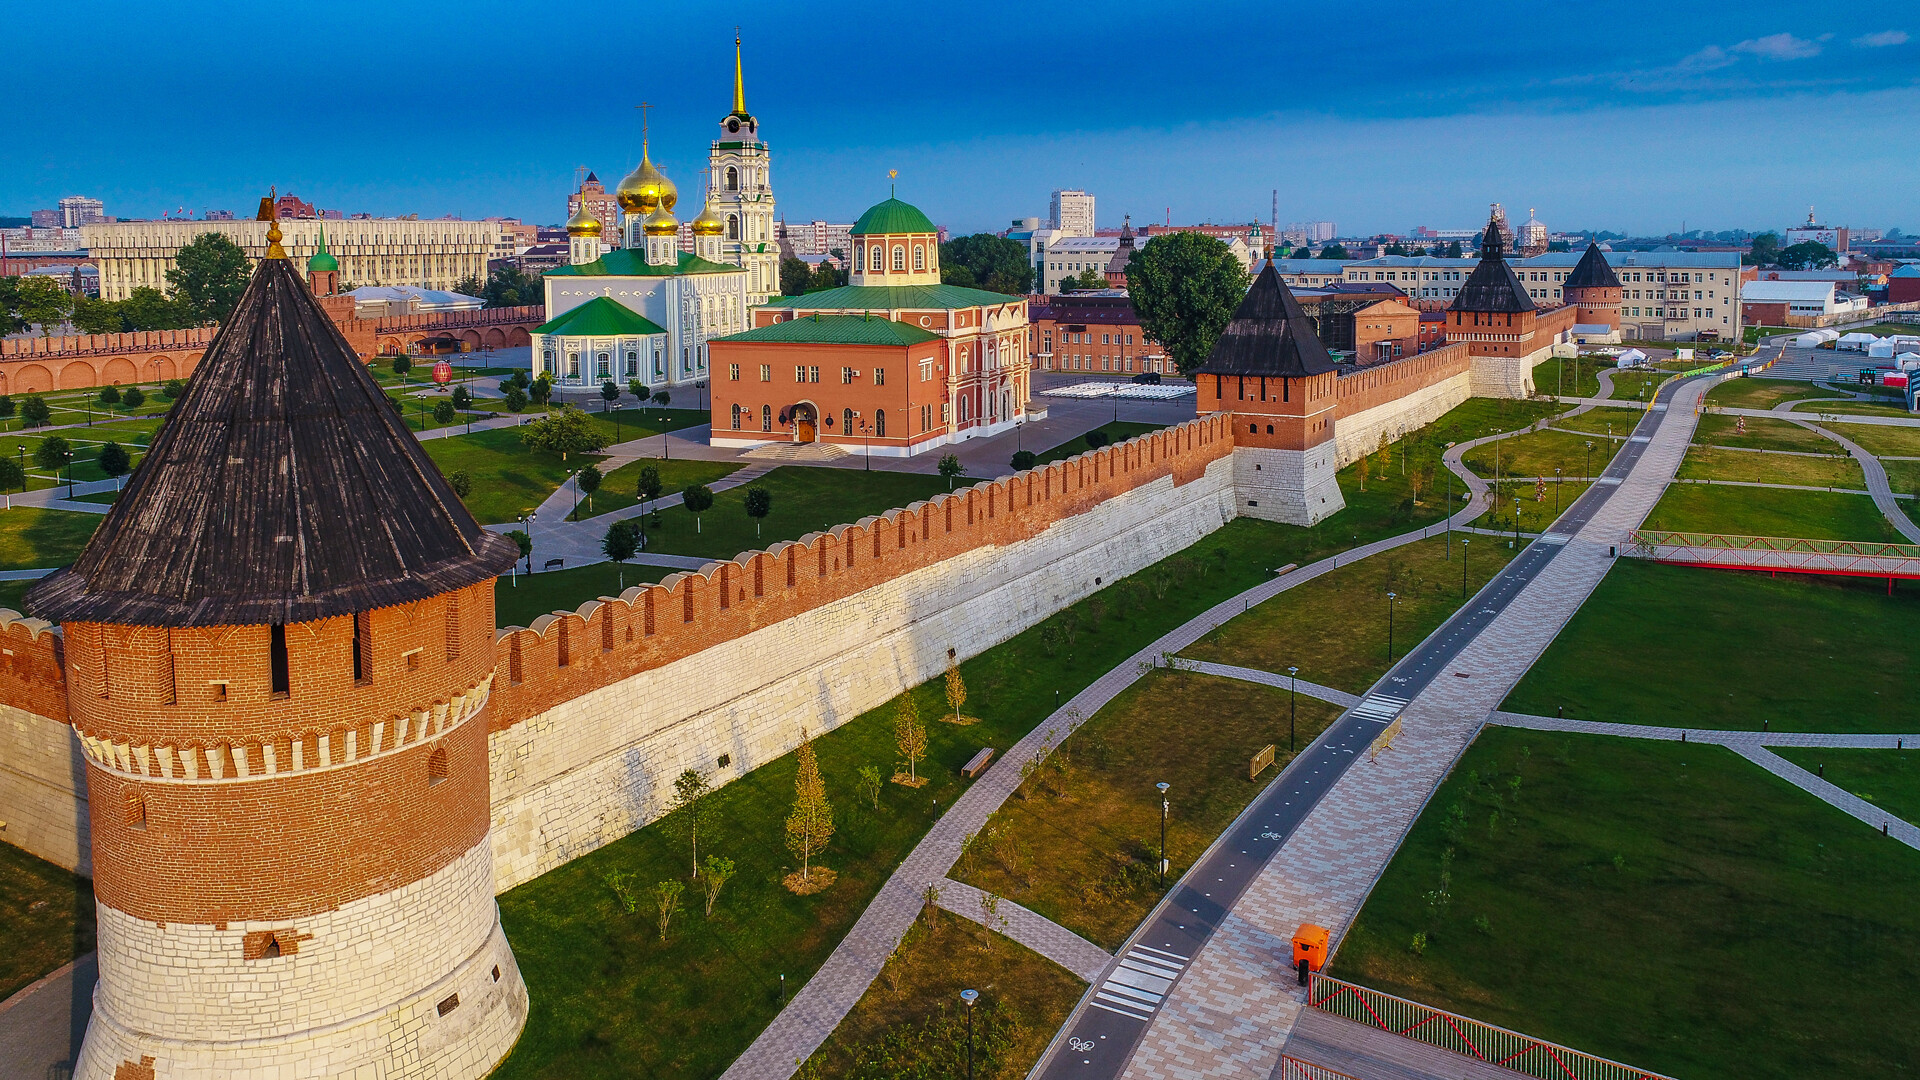 Тульский кремль и Казанская набережная реки Упы